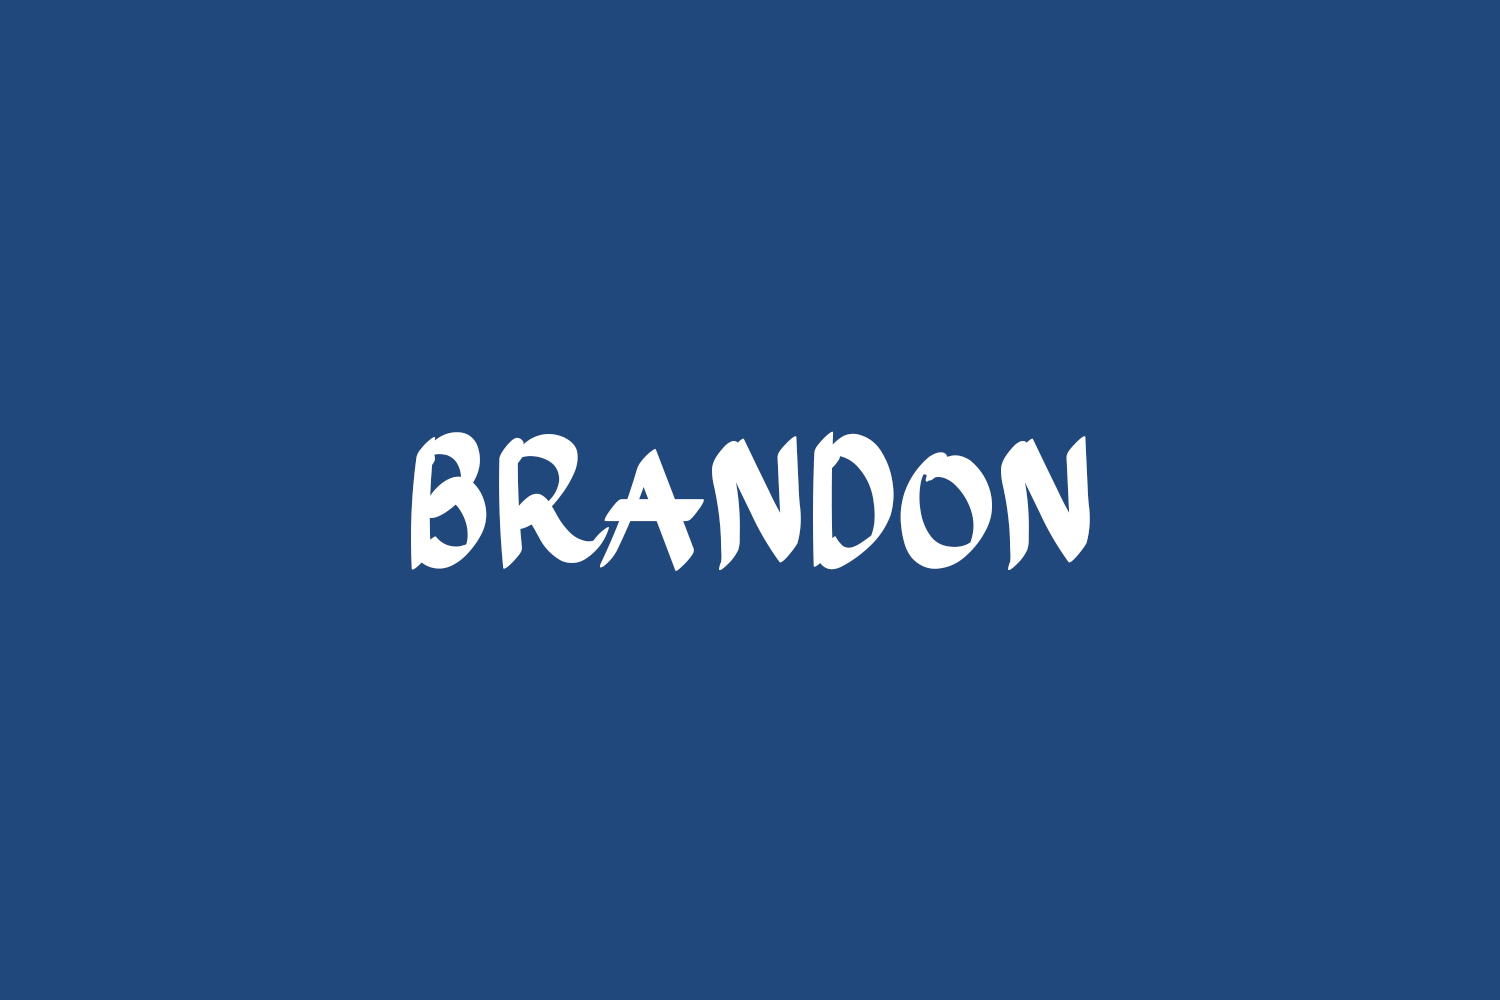 Brandon Free Font